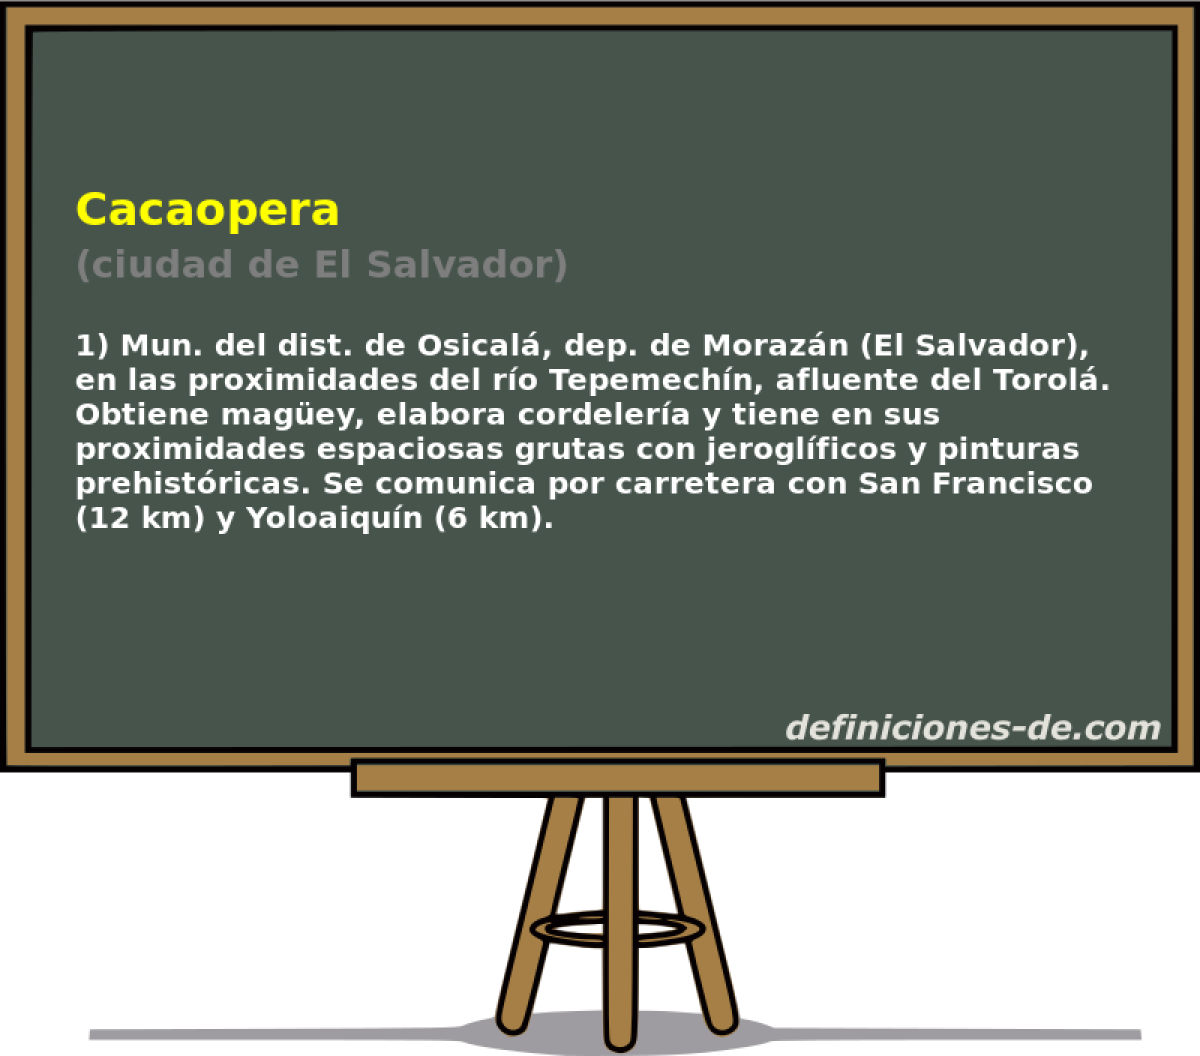 Cacaopera (ciudad de El Salvador)